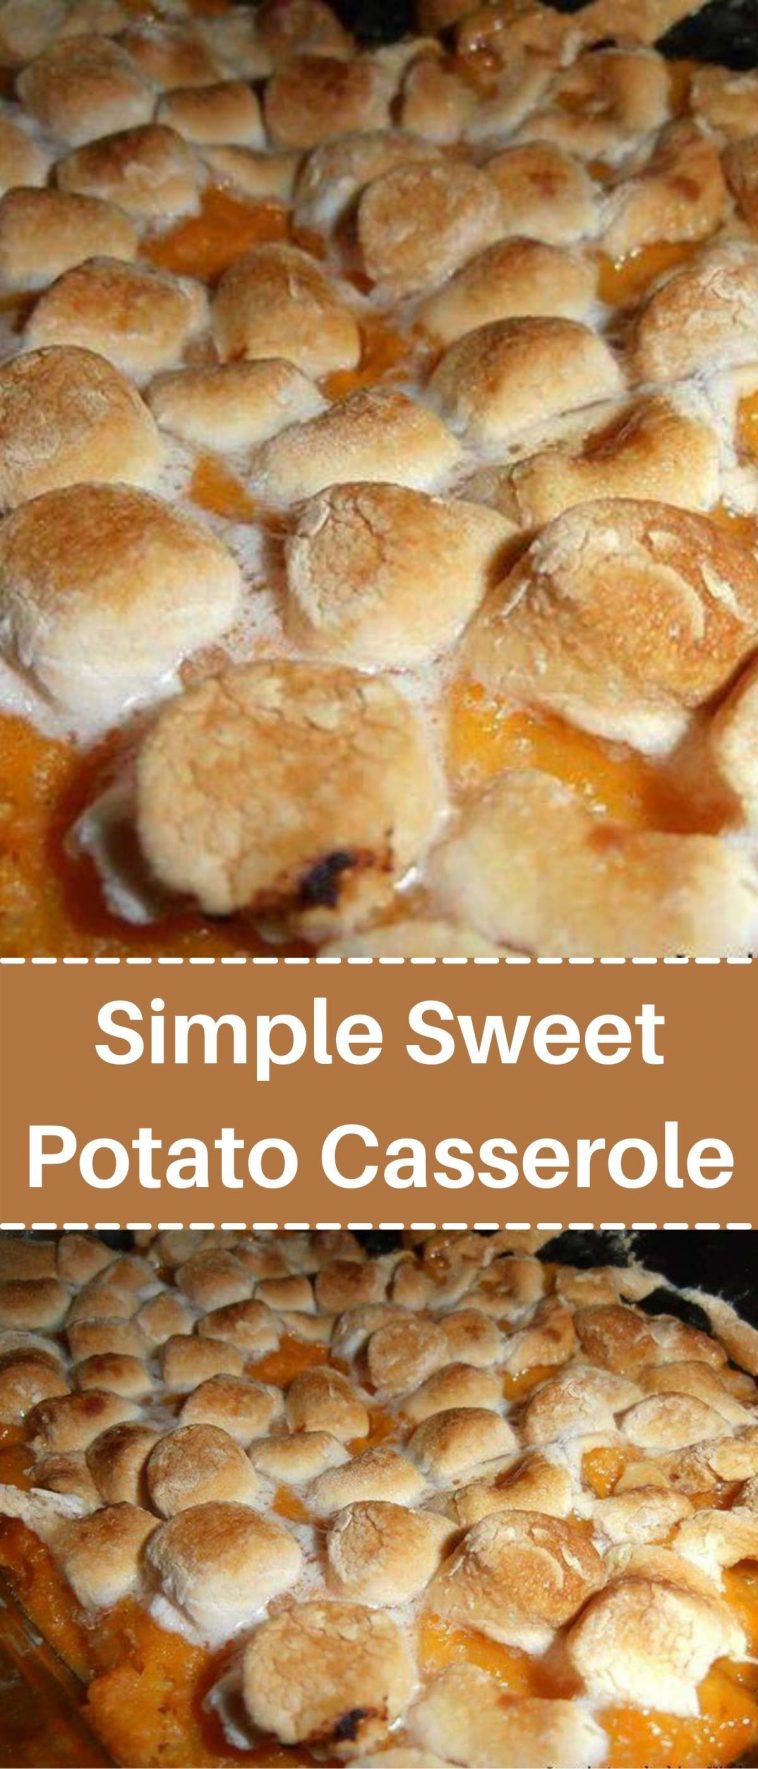 Simple Sweet Potato Casserole